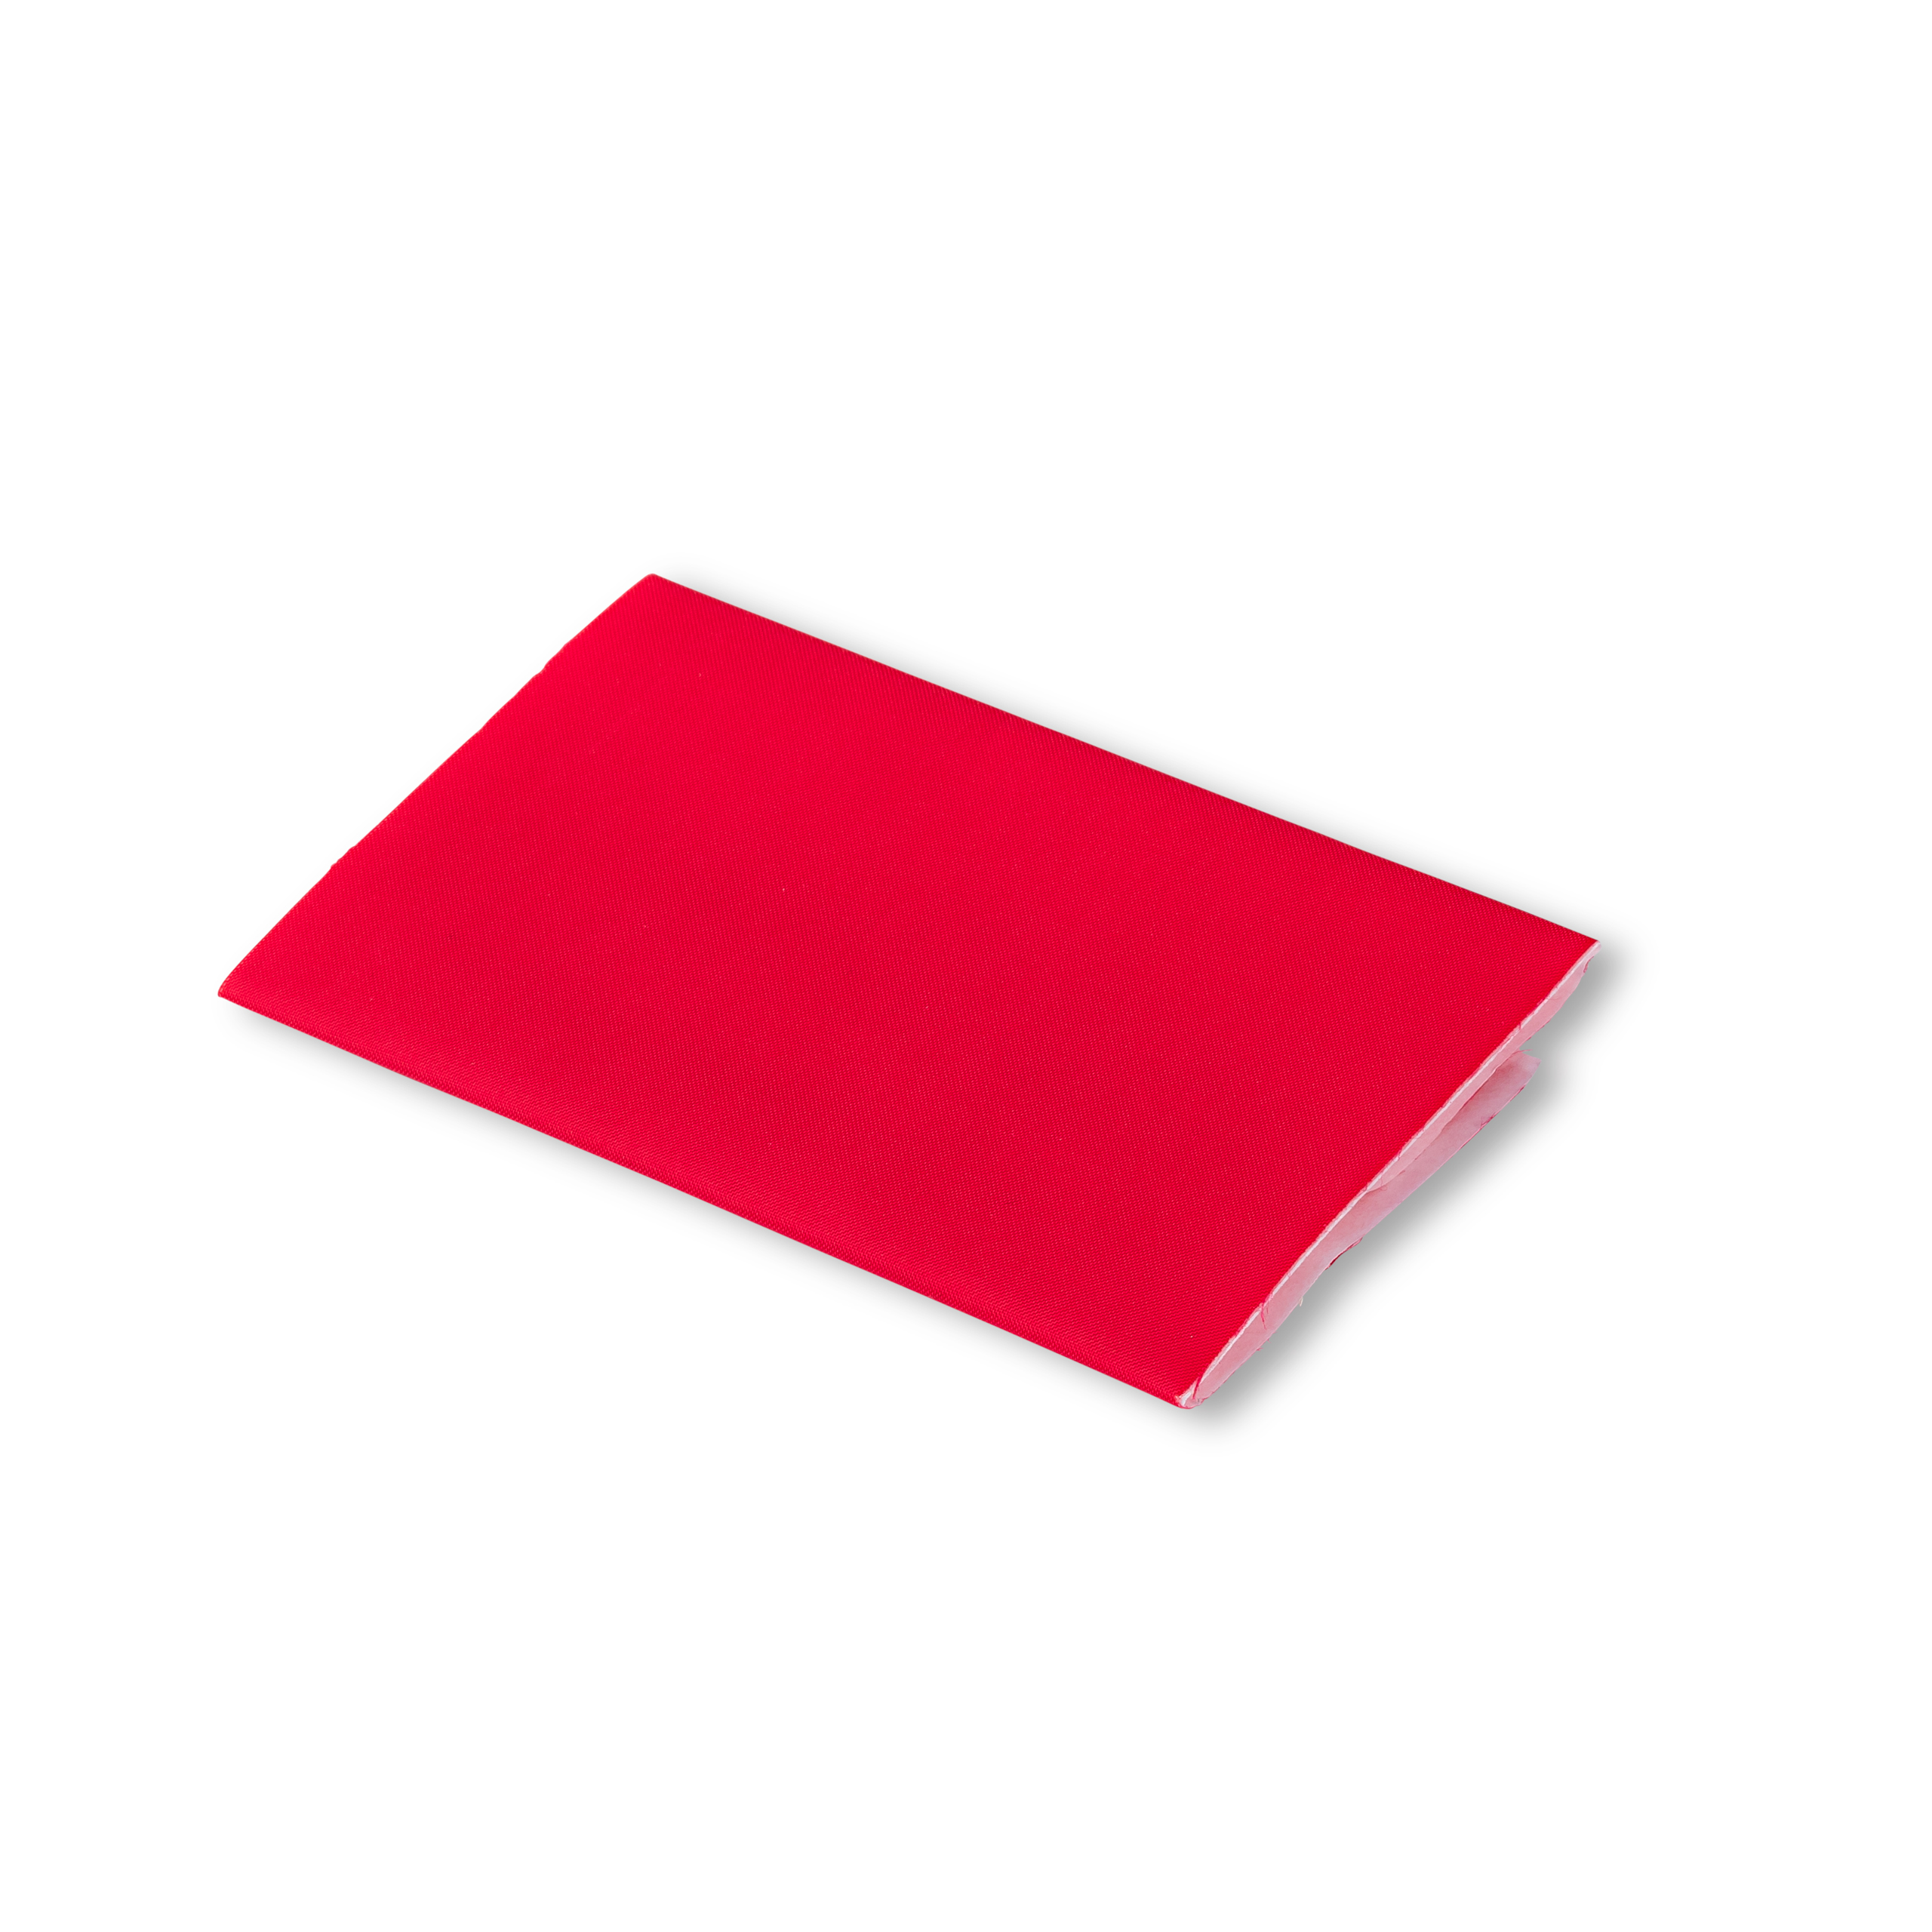 Nylon-Flicken selbstklebend 18 x 10 cm rot, 0,018 m²